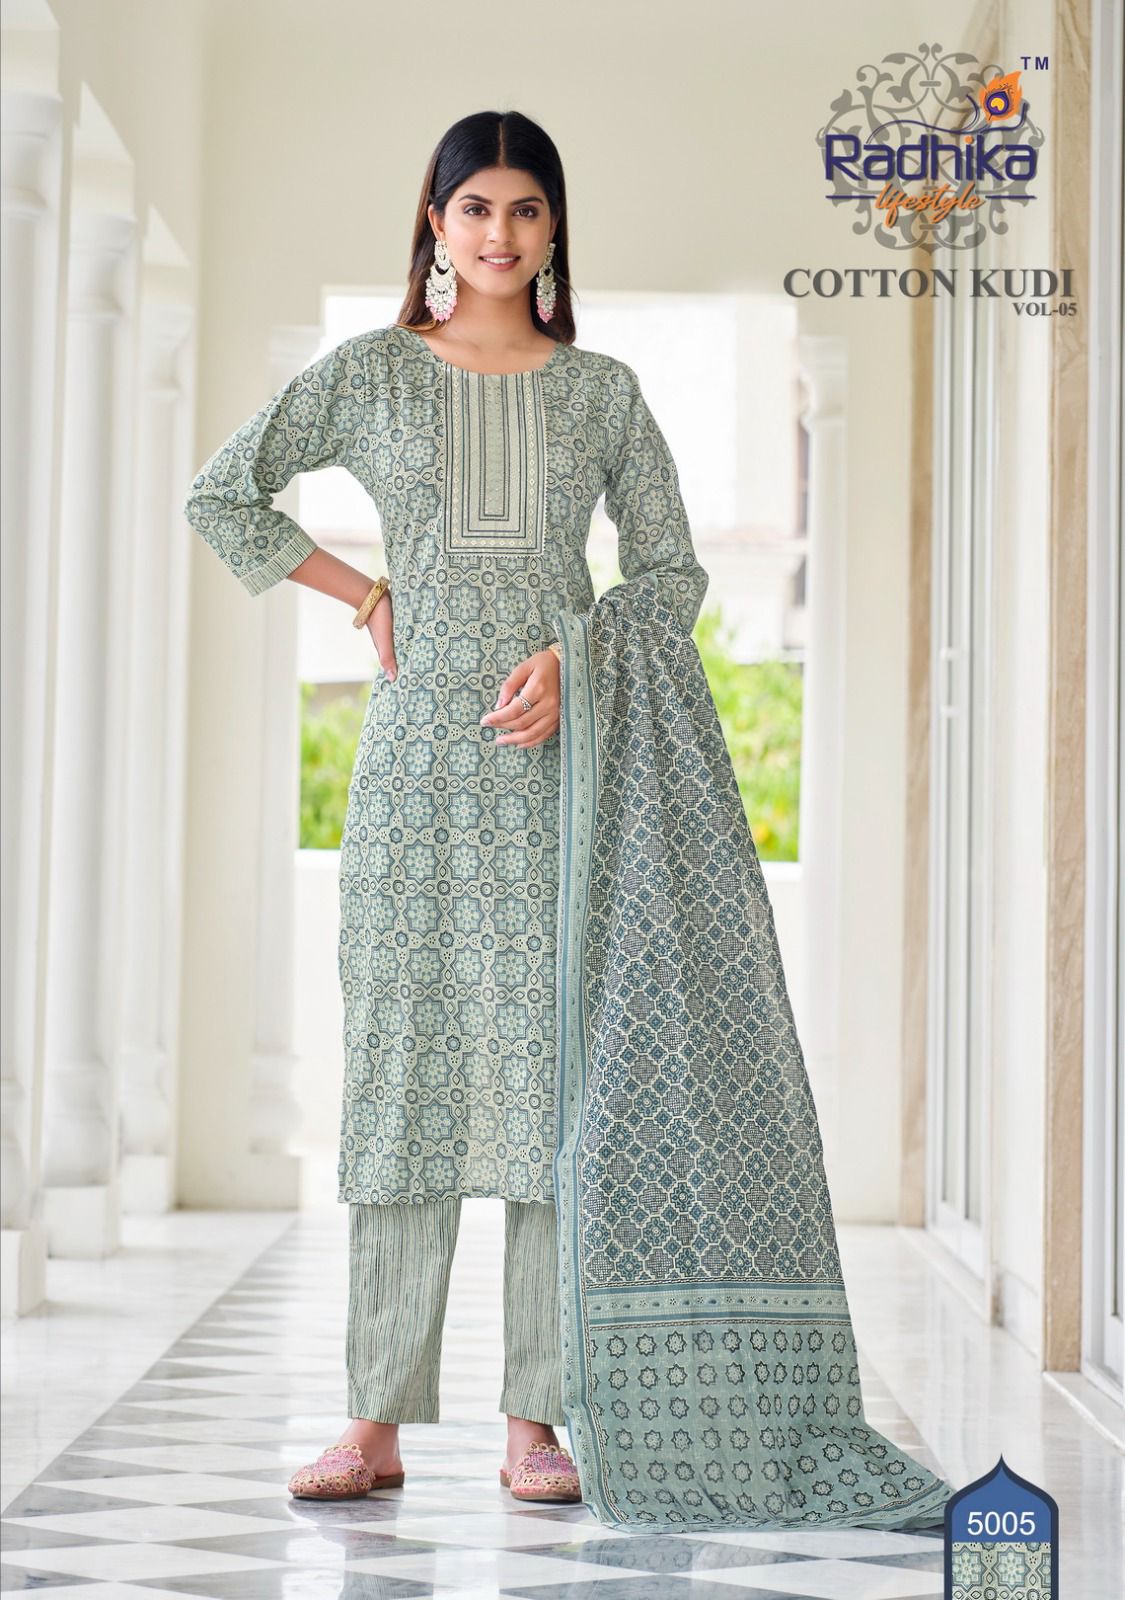 Radhika Cotton Kudi Vol 5 collection 4